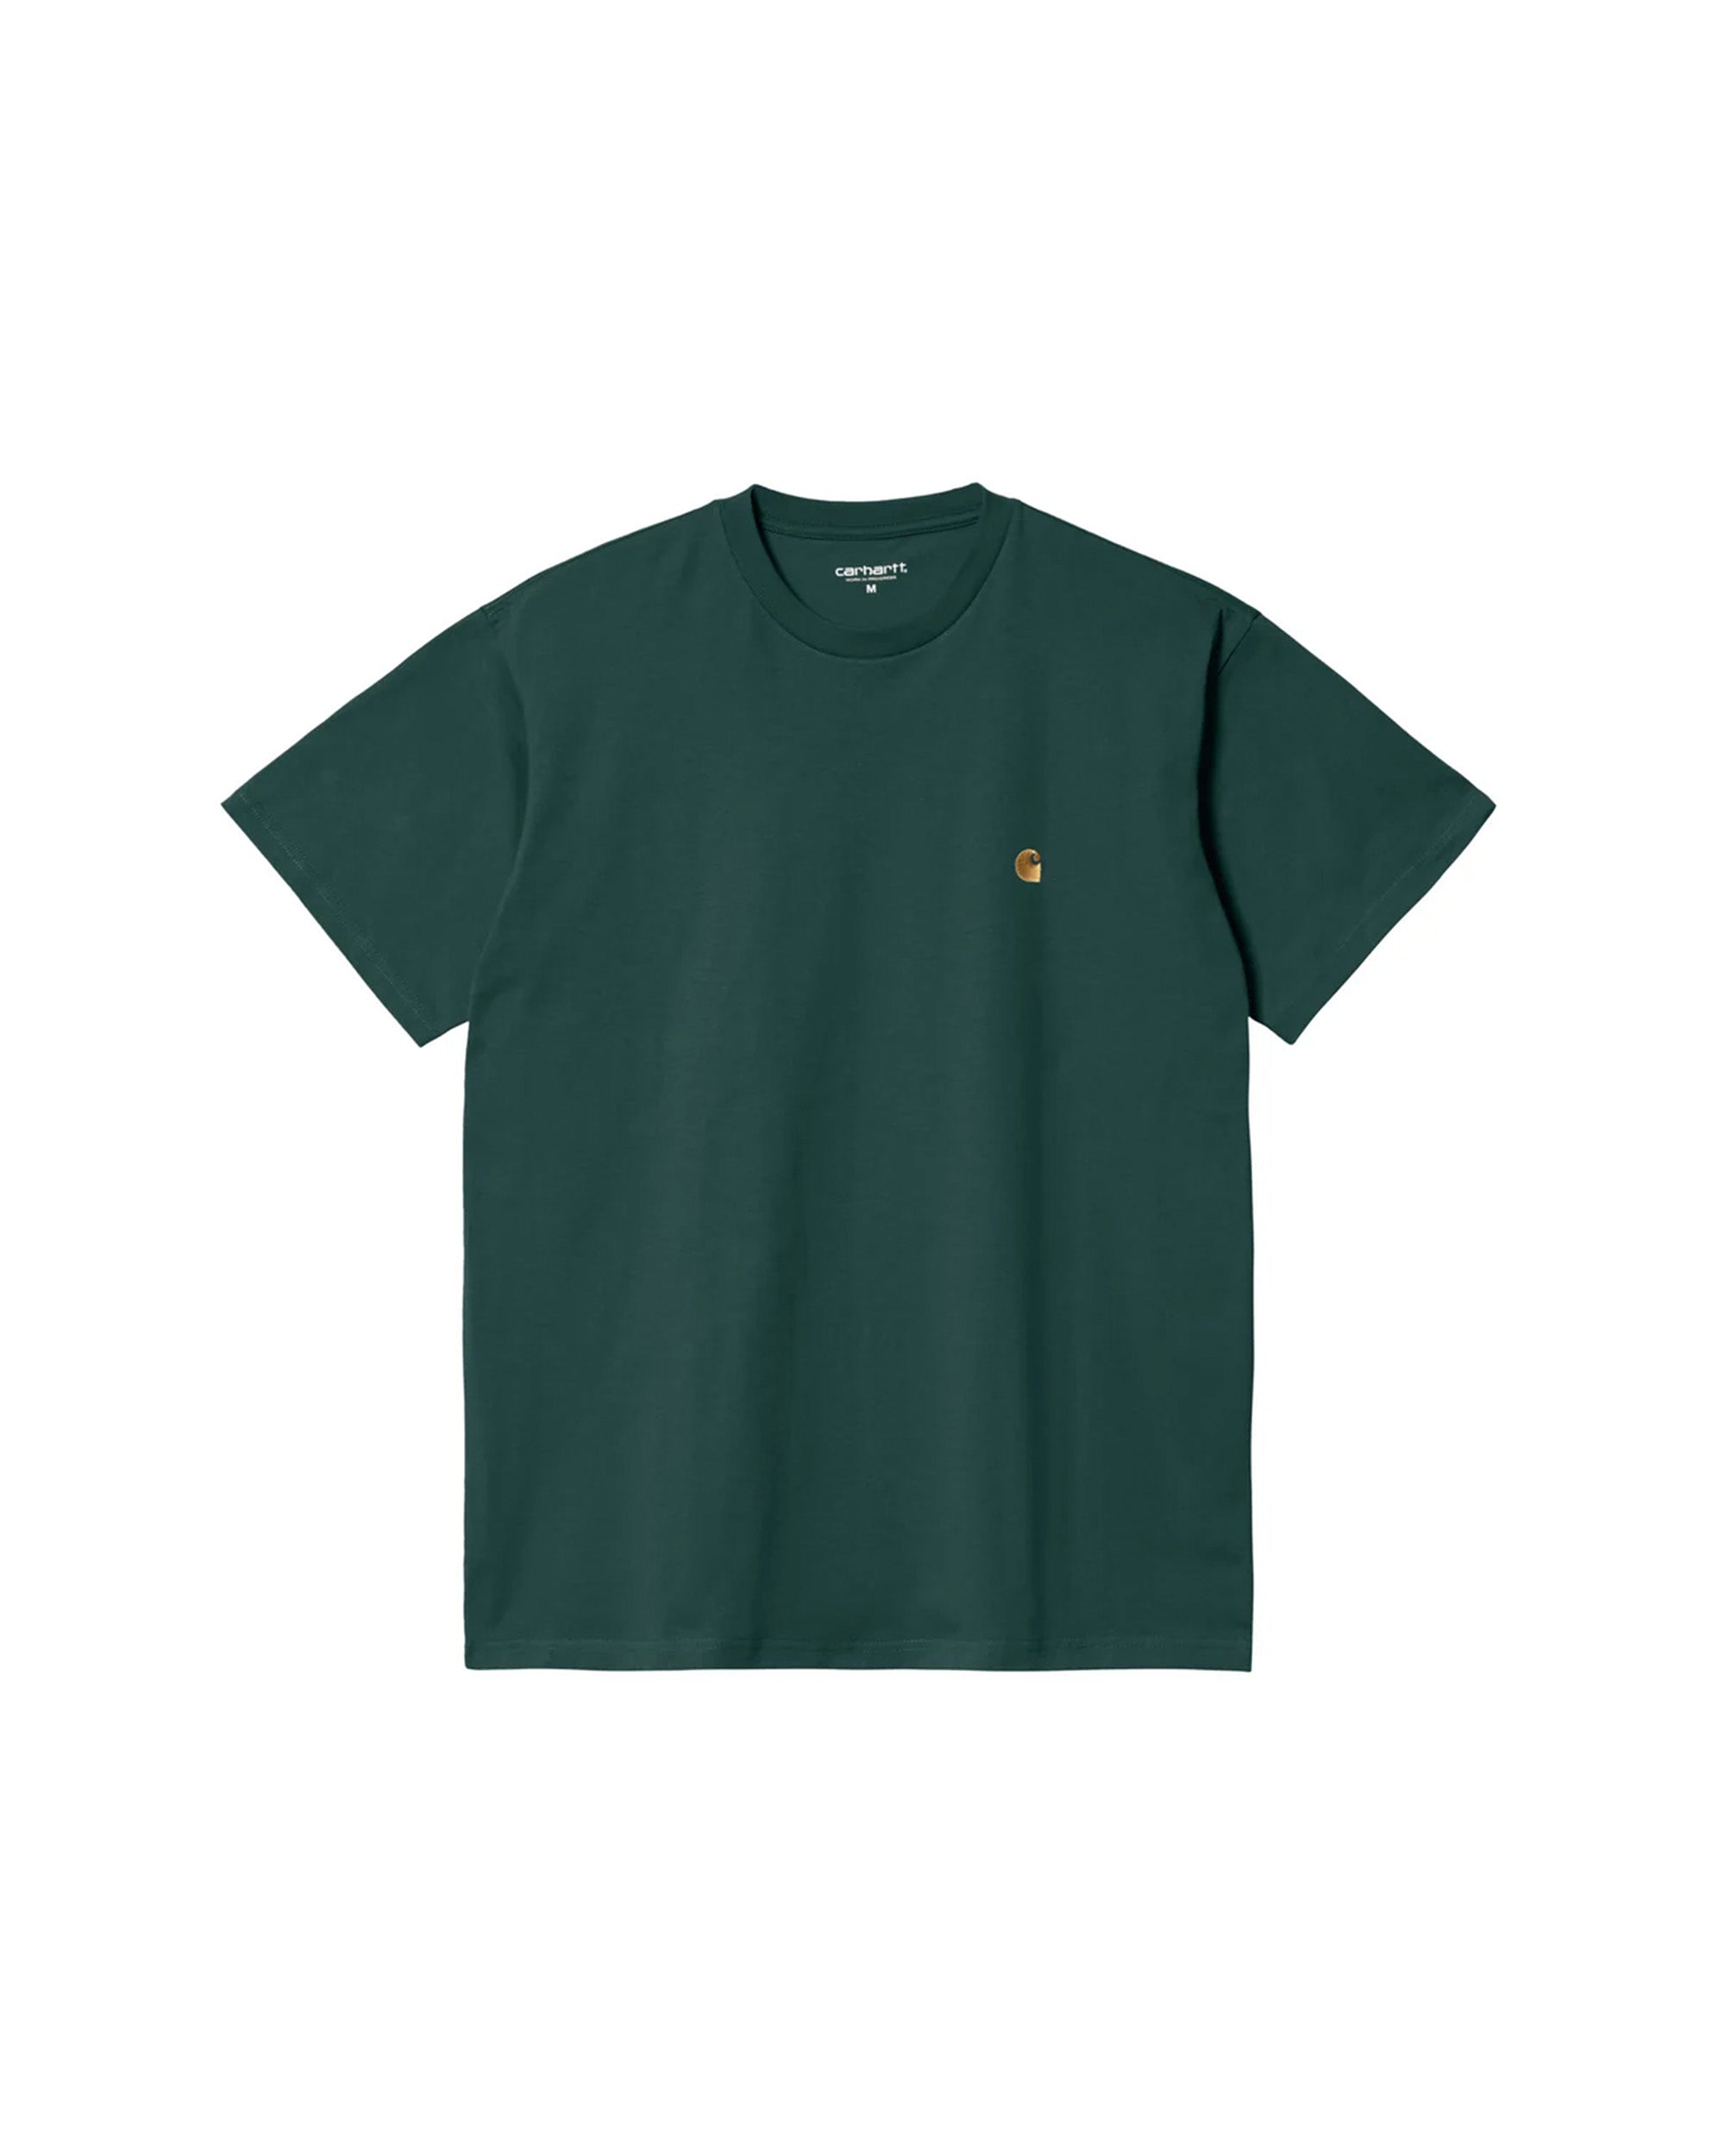 S/S Chase Shirt - Botanic / Gold